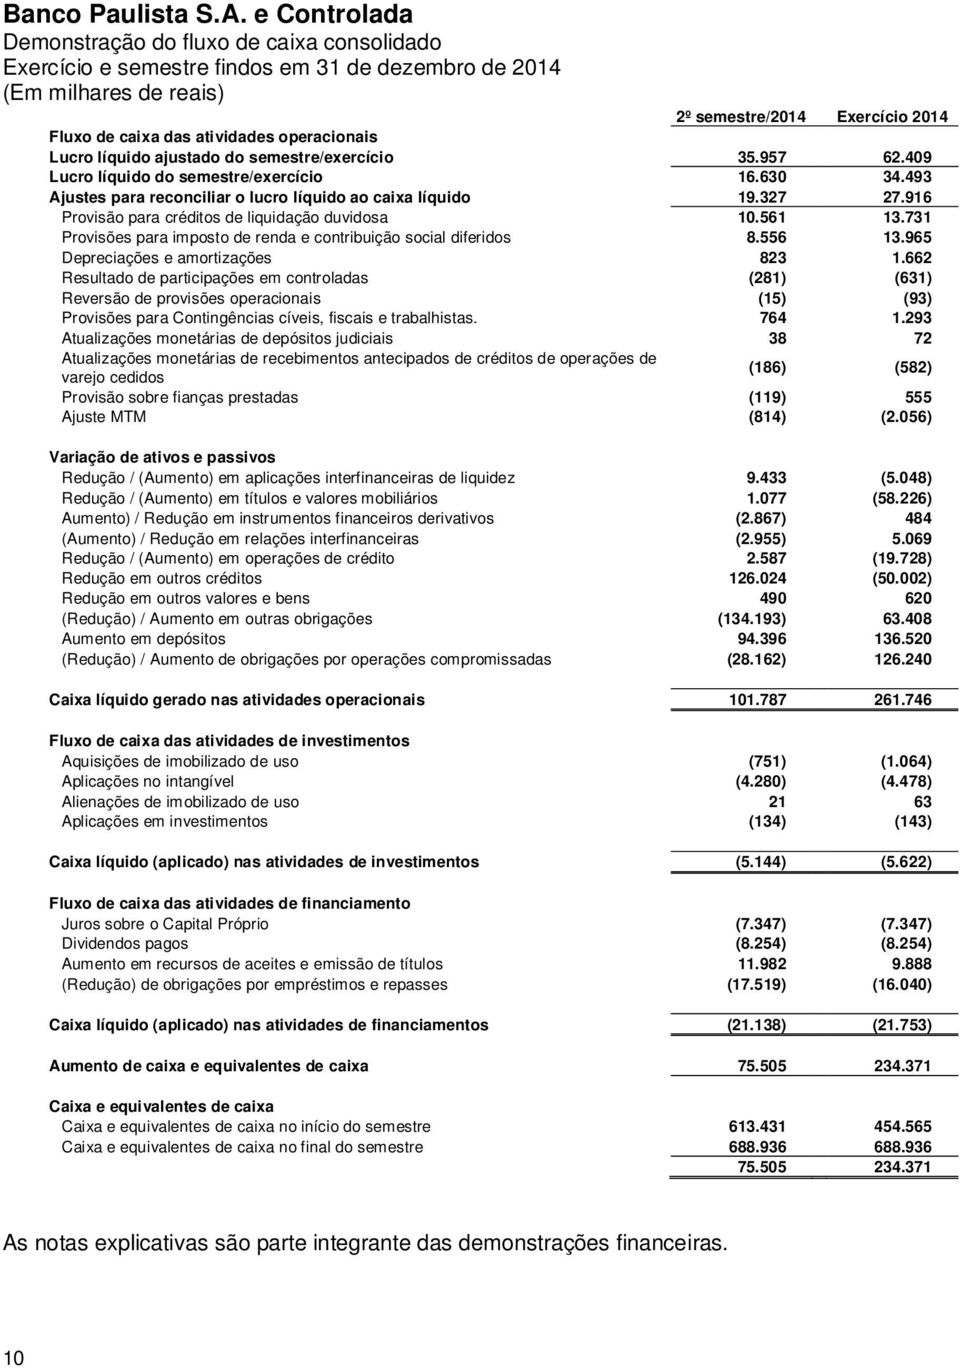 731 Provisões para imposto de renda e contribuição social diferidos 8.556 13.965 Depreciações e amortizações 823 1.